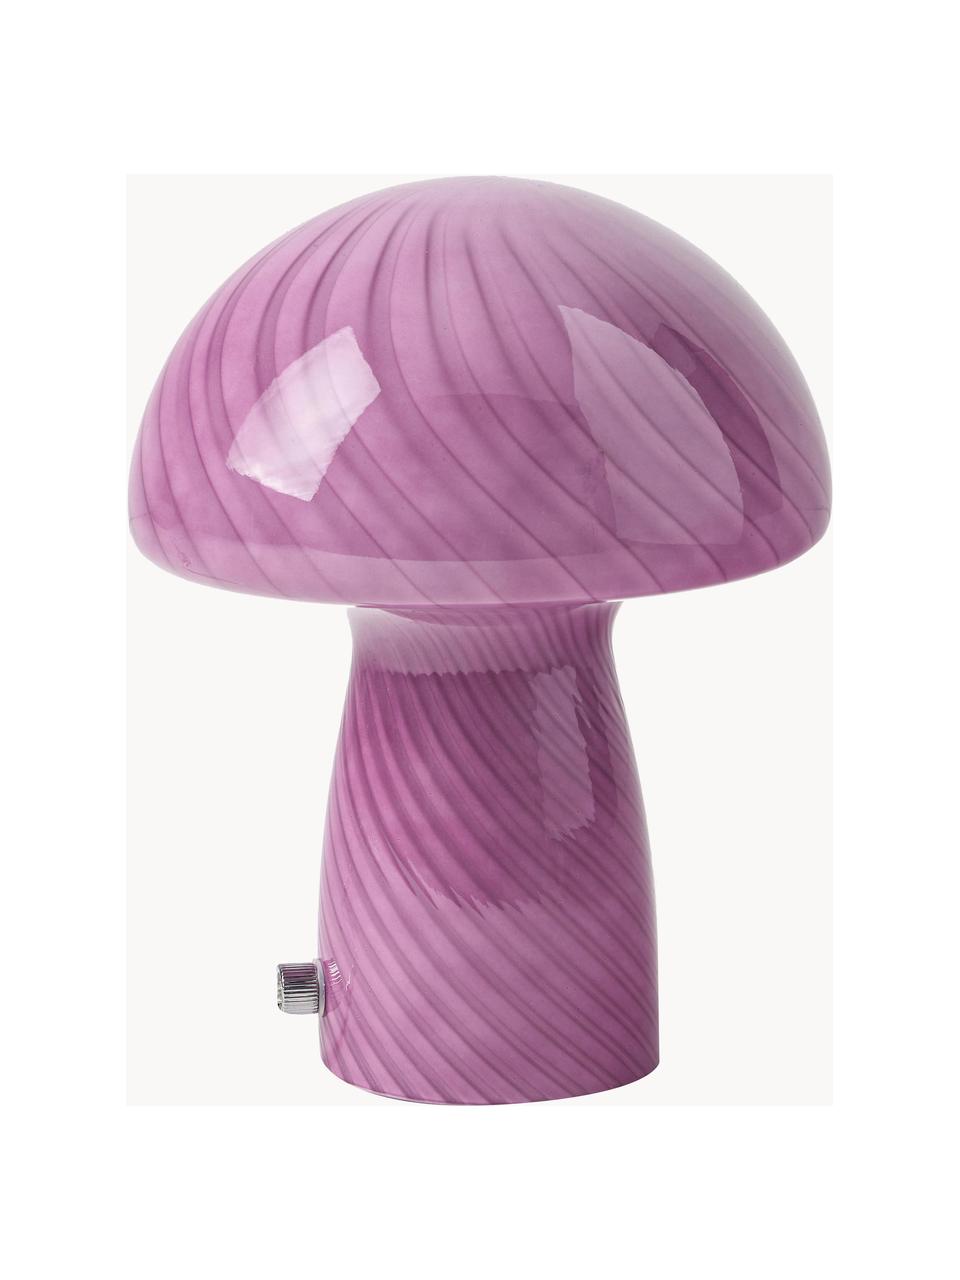 Kleine Tischlampe Mushroom aus Glas, Lila, Ø 19 x H 23 cm